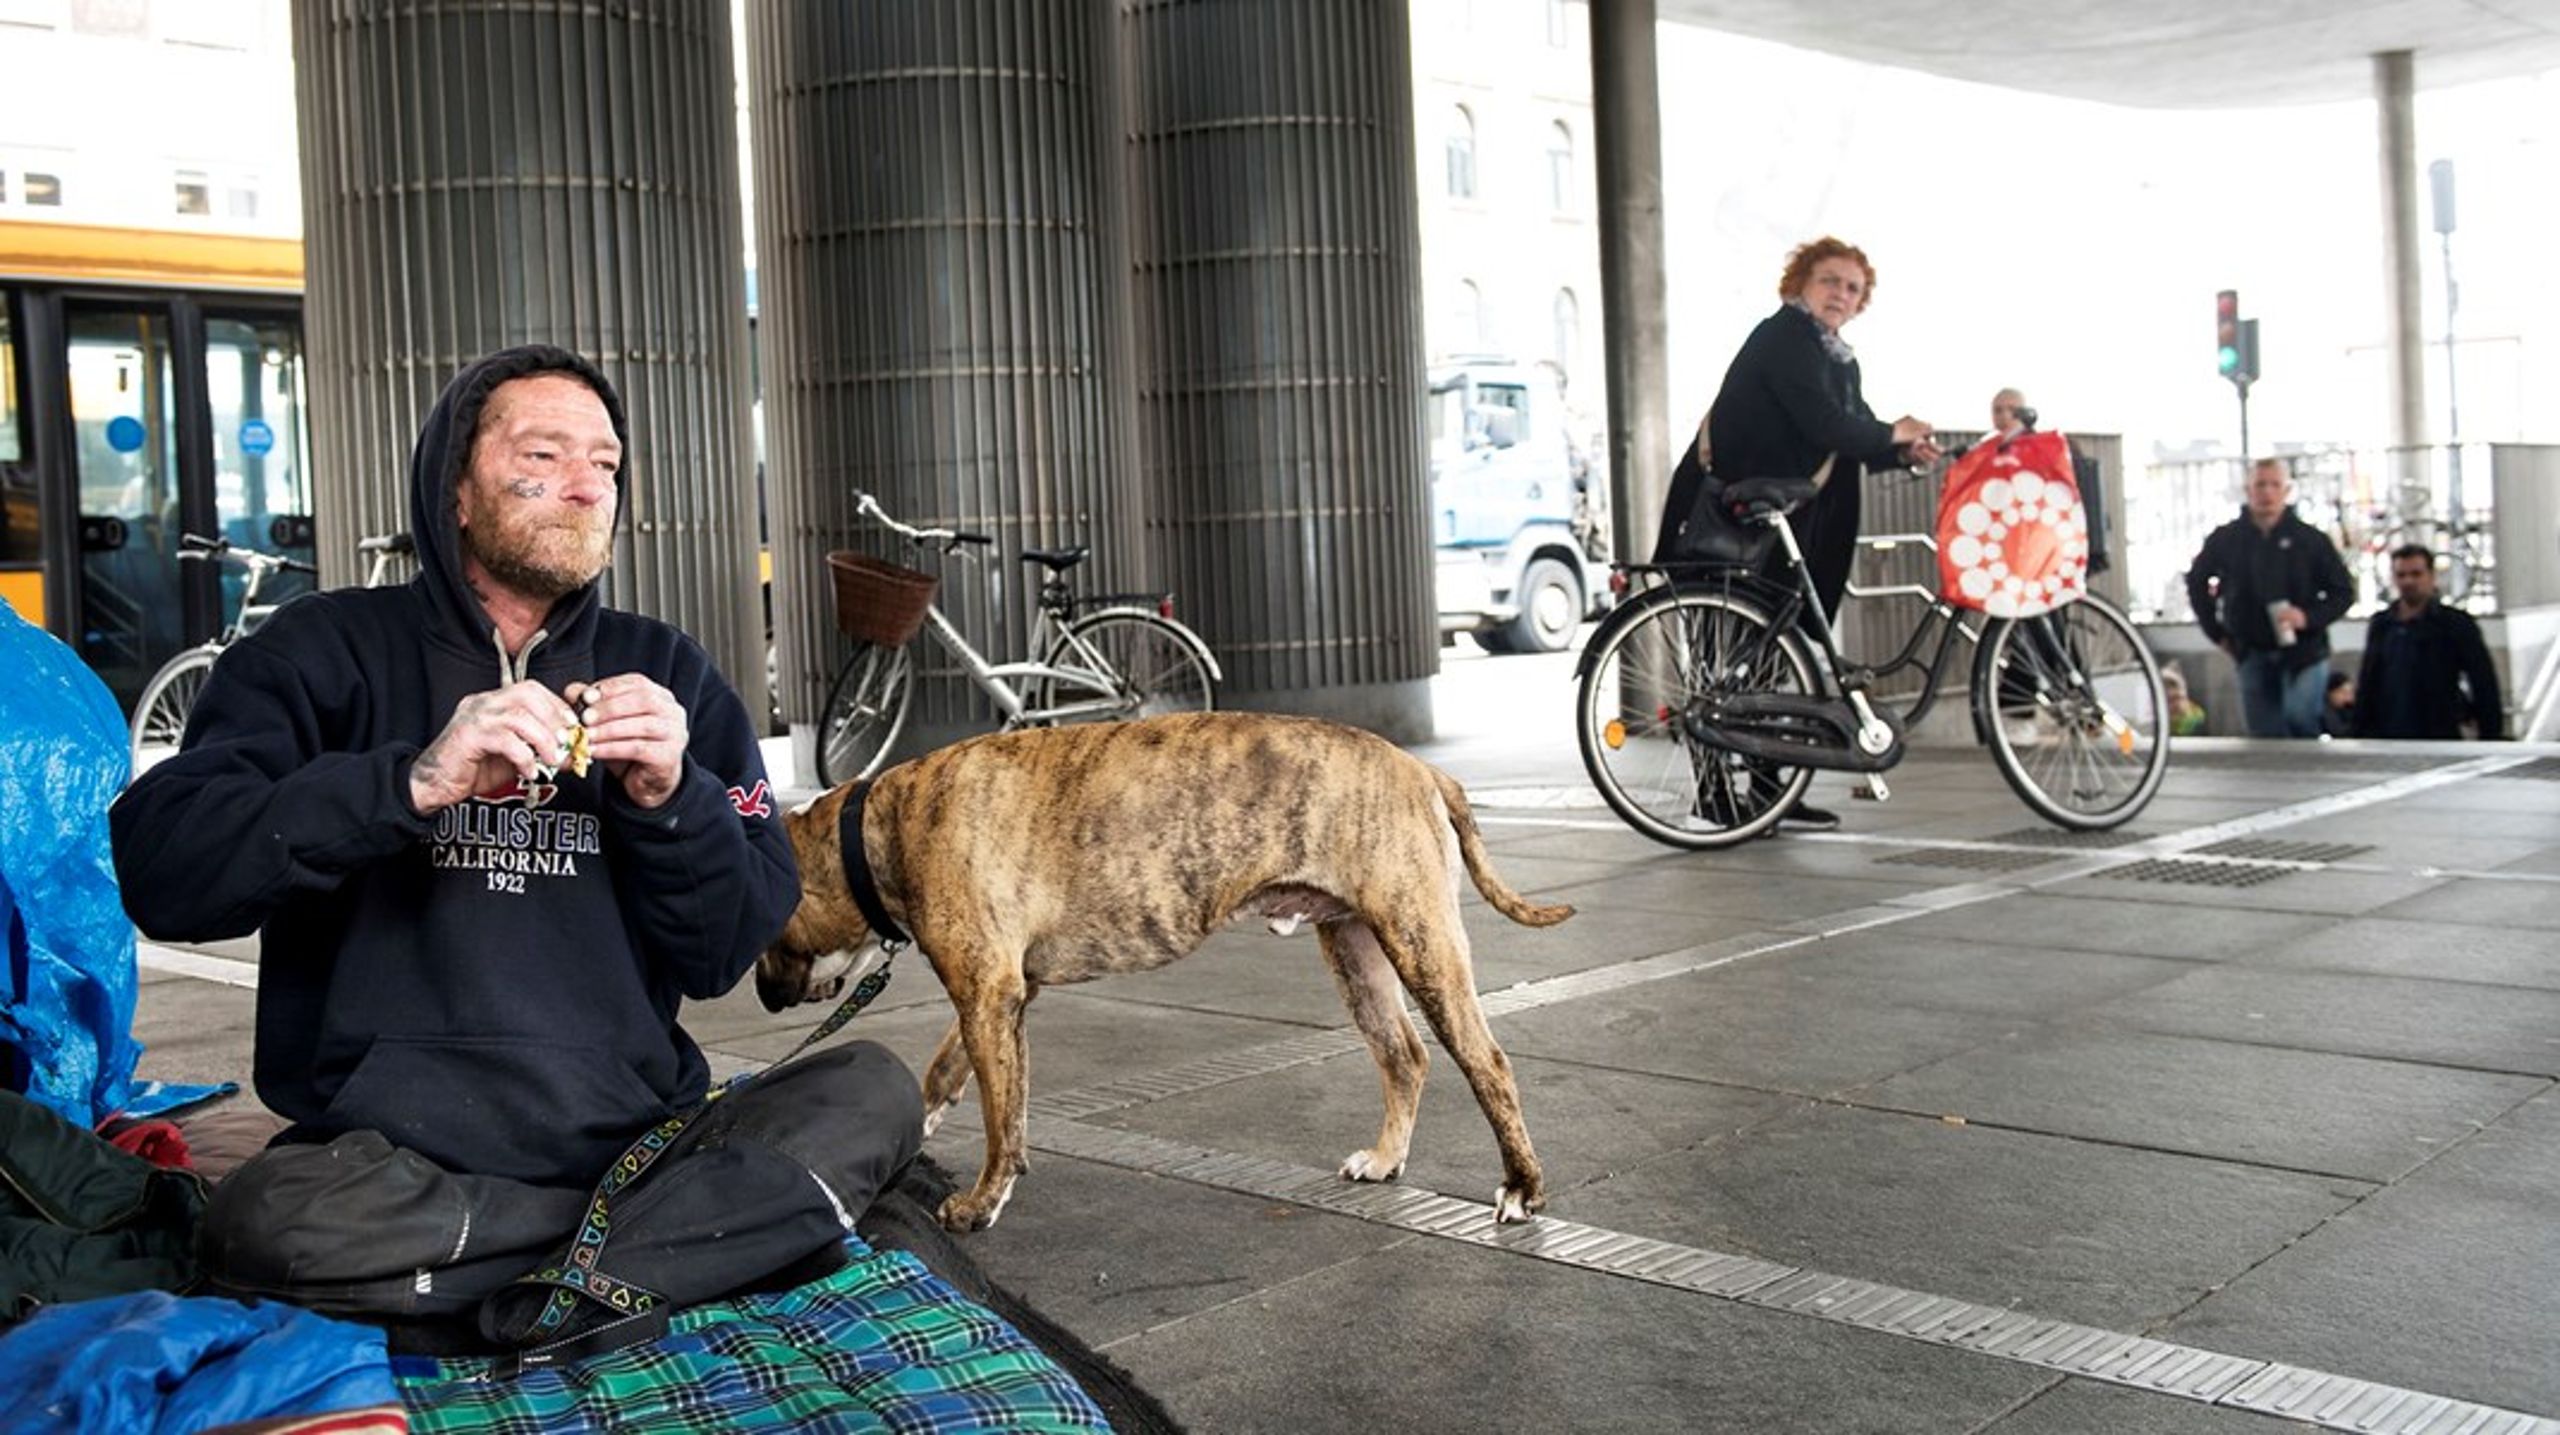 Ingen skal stå alene uden bolig i et samfund som det
danske, skriver skriver organisationerne, som kommer med&nbsp;seks forslag til en hjemløsereform, som skal få borgere ud af hjemløshed.&nbsp;